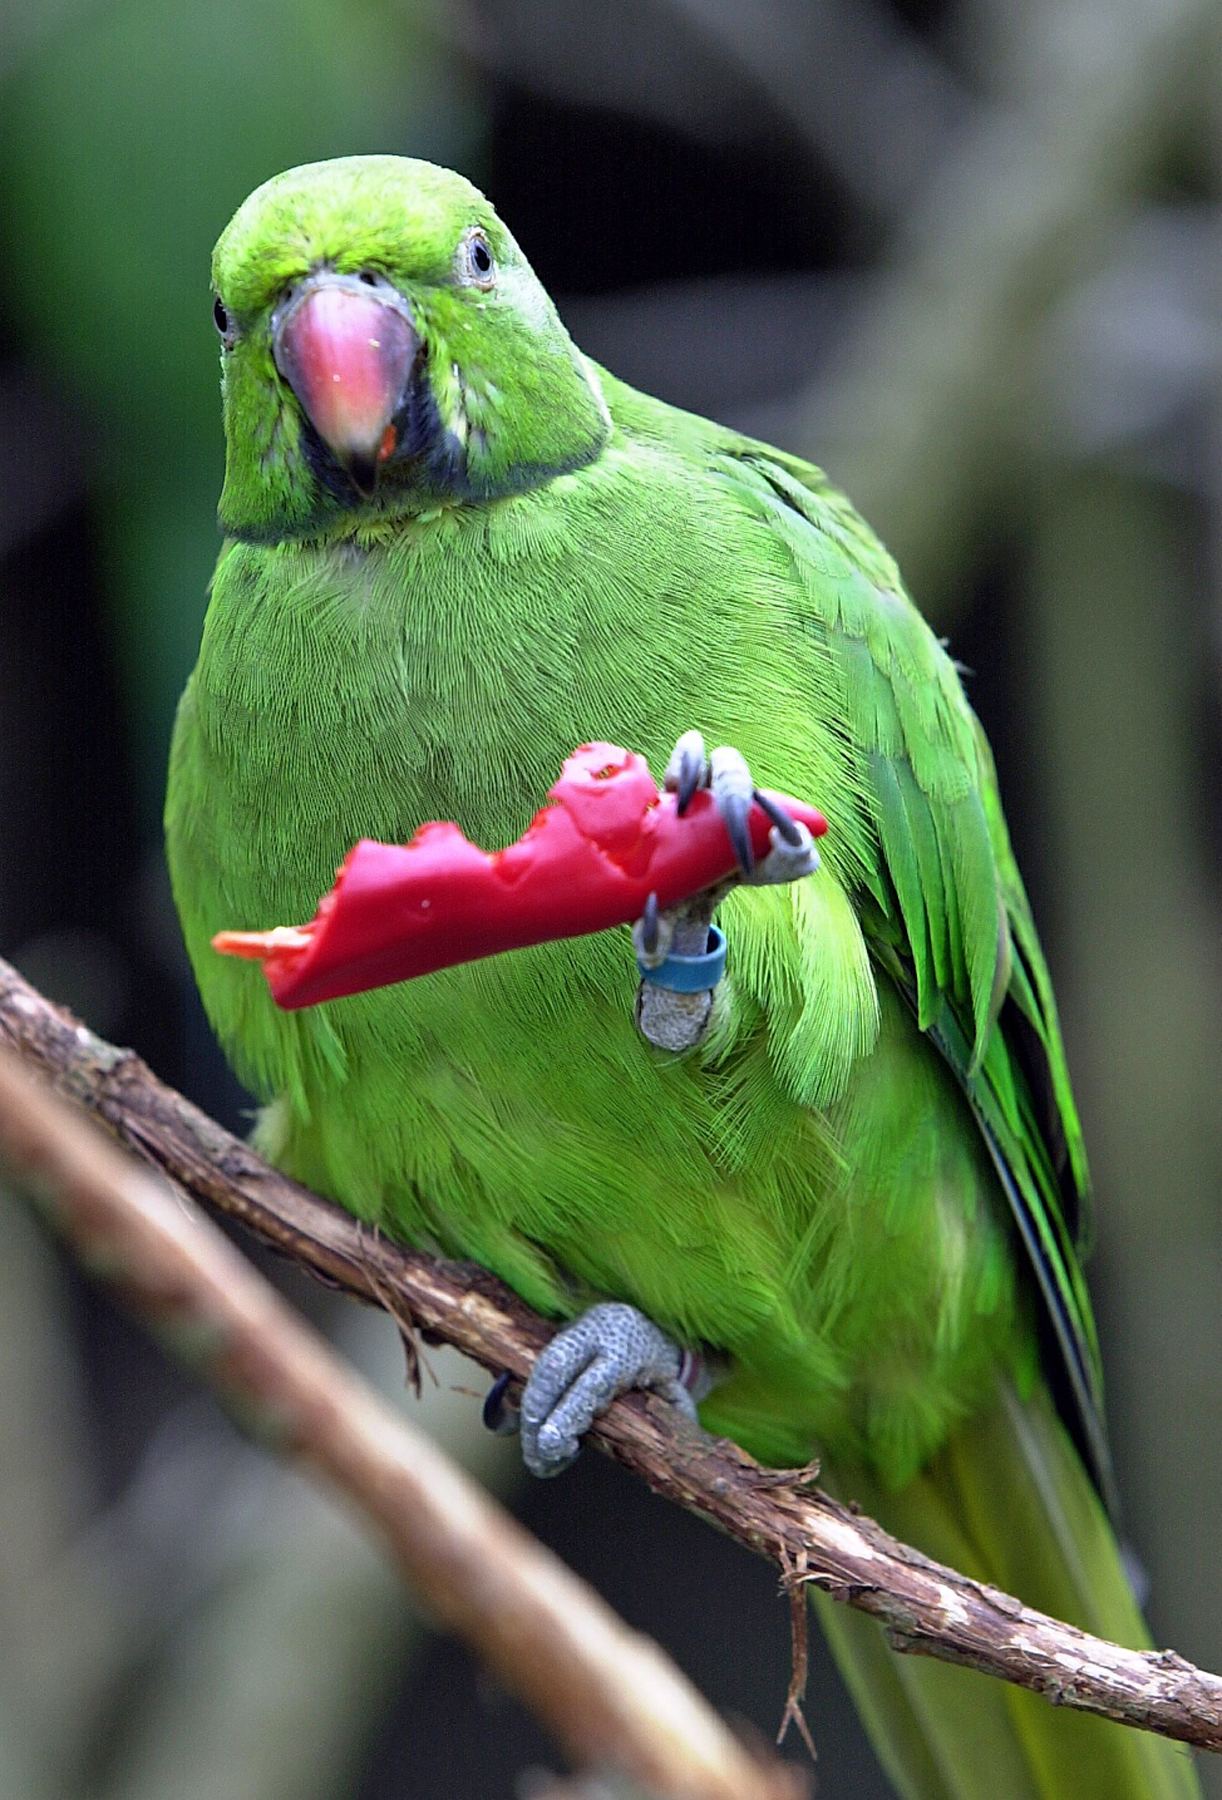 Jersey Zoo or Field Pr echo parakeet & chilli pepper 7 JM.jpg